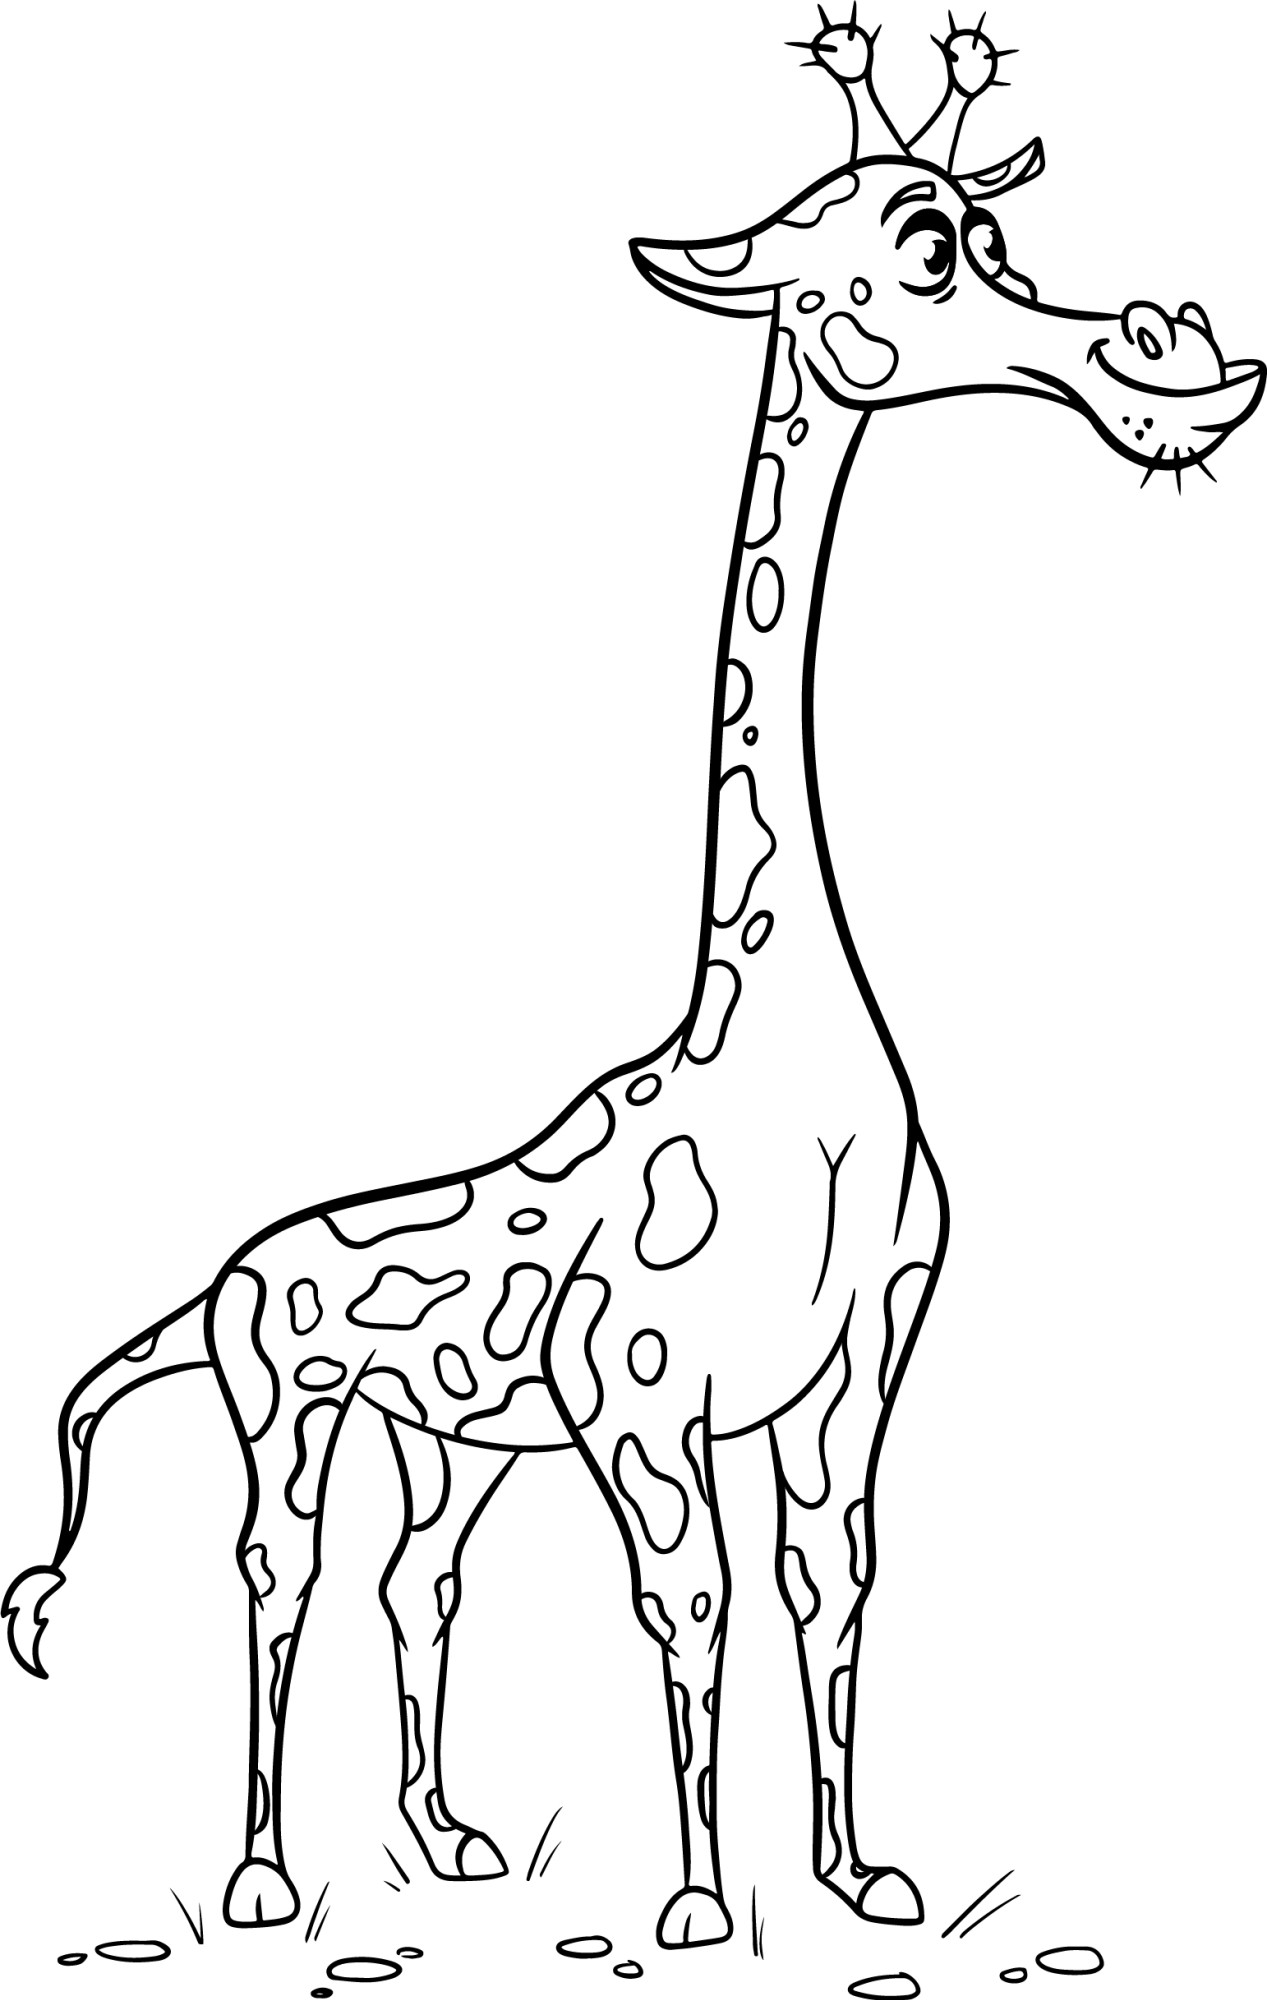 Раскраска для детей: большой забавный жираф